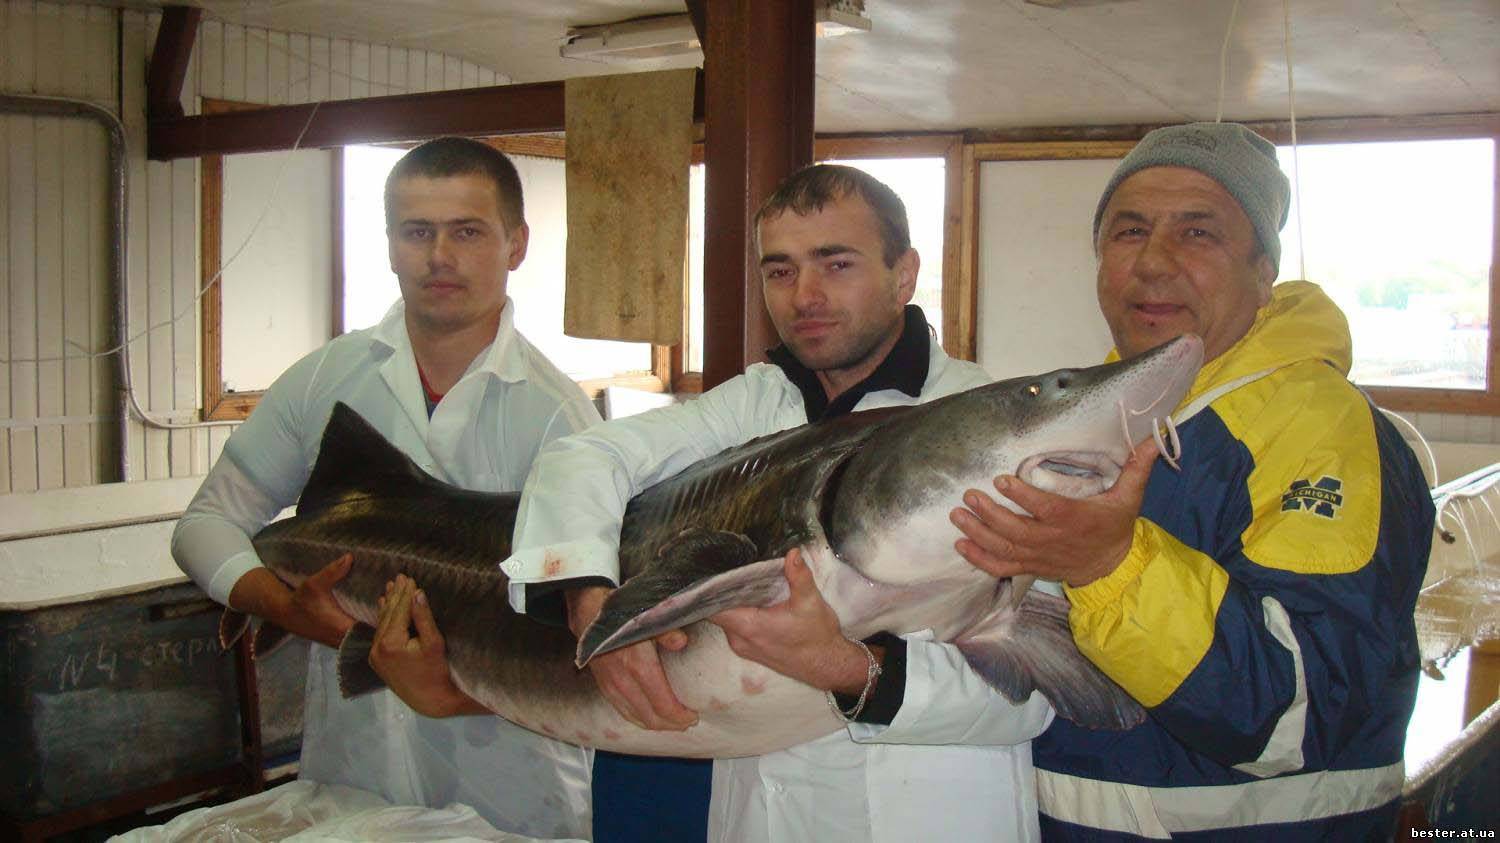 Бестер - рыба, выведенная российскими селекционерами. что за рыба такая - бестер? белуга со стерлядью